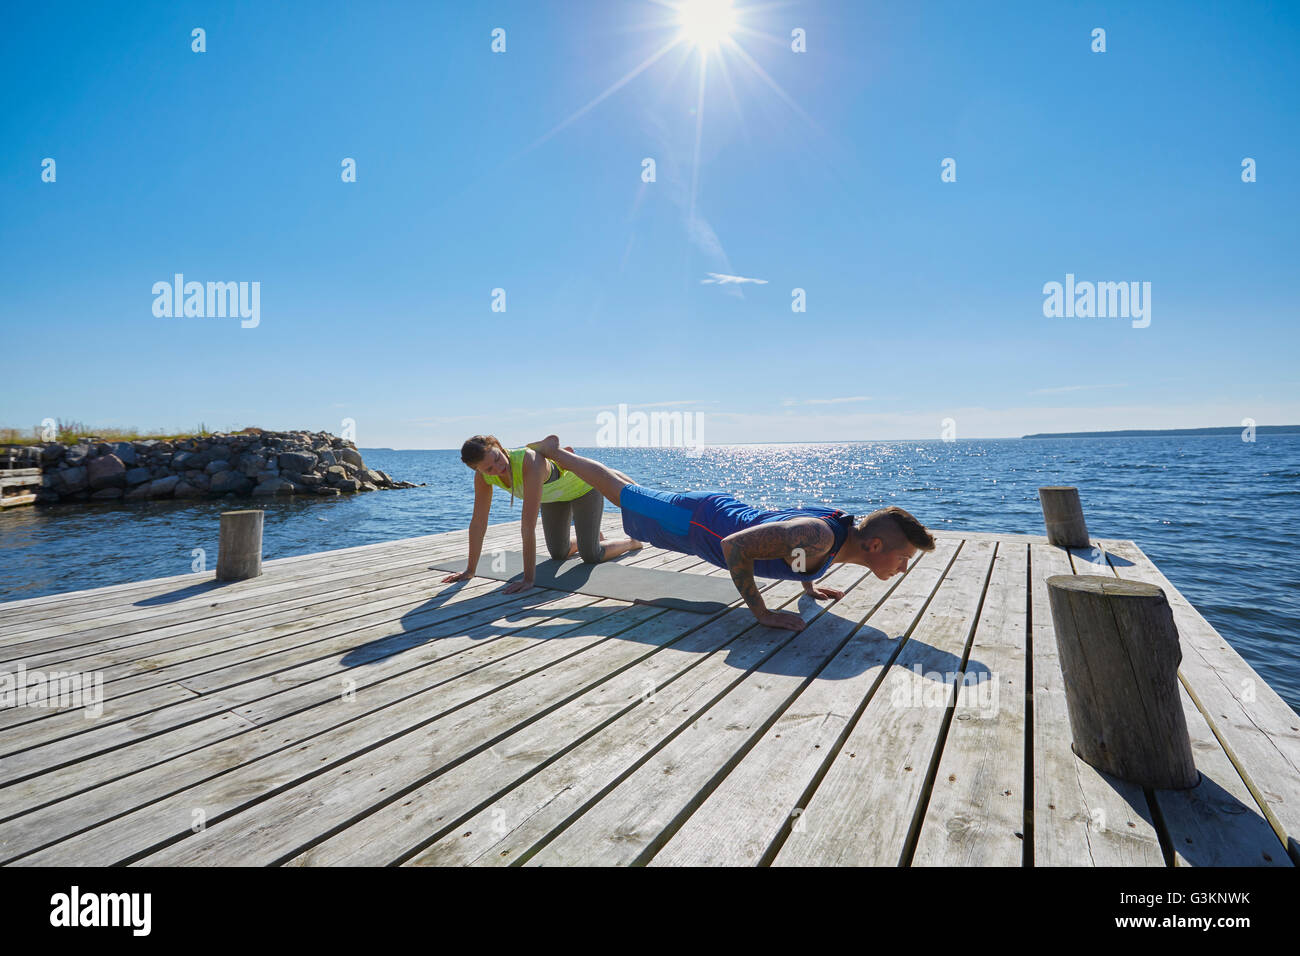 Mann am Pier dabei drücken ups, Beine angehoben auf Freund Stockfoto